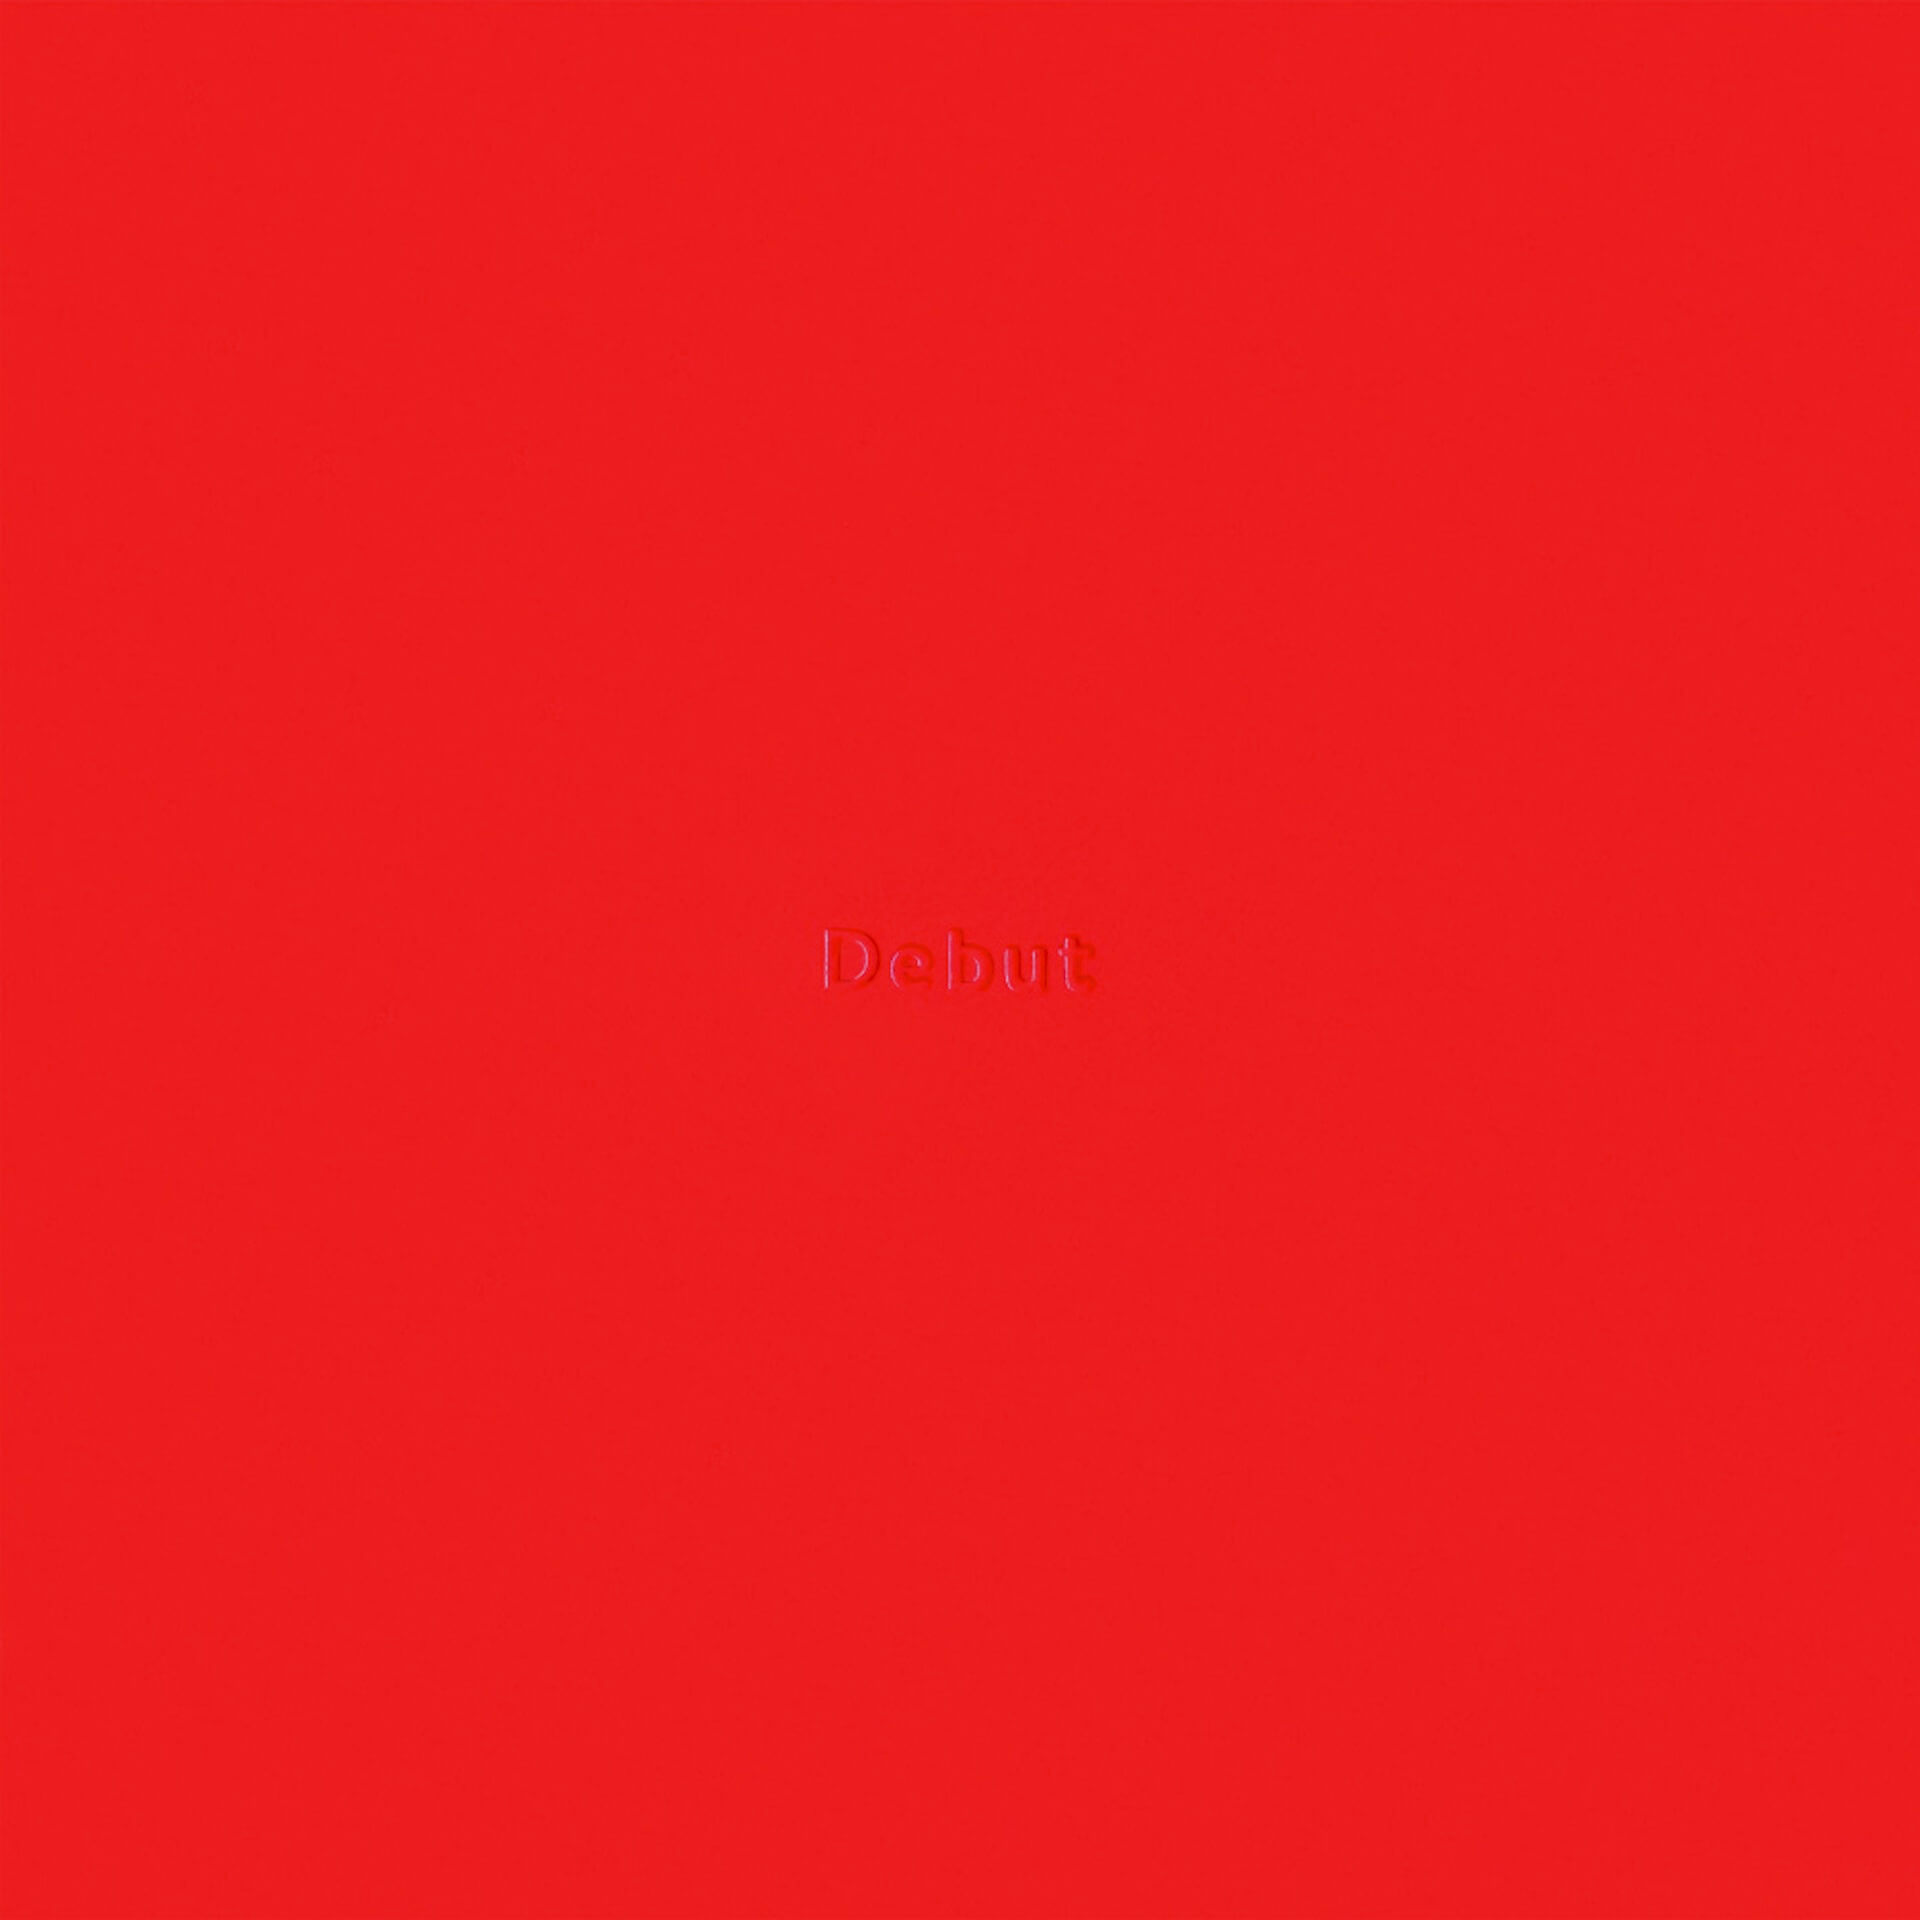 Ryohuの1st Album『DEBUT』リリースを記念したポップアップが開催決定！オカモトレイジリミックス曲付属のフーディーが登場 music201119_ryohu_debut_popup_8